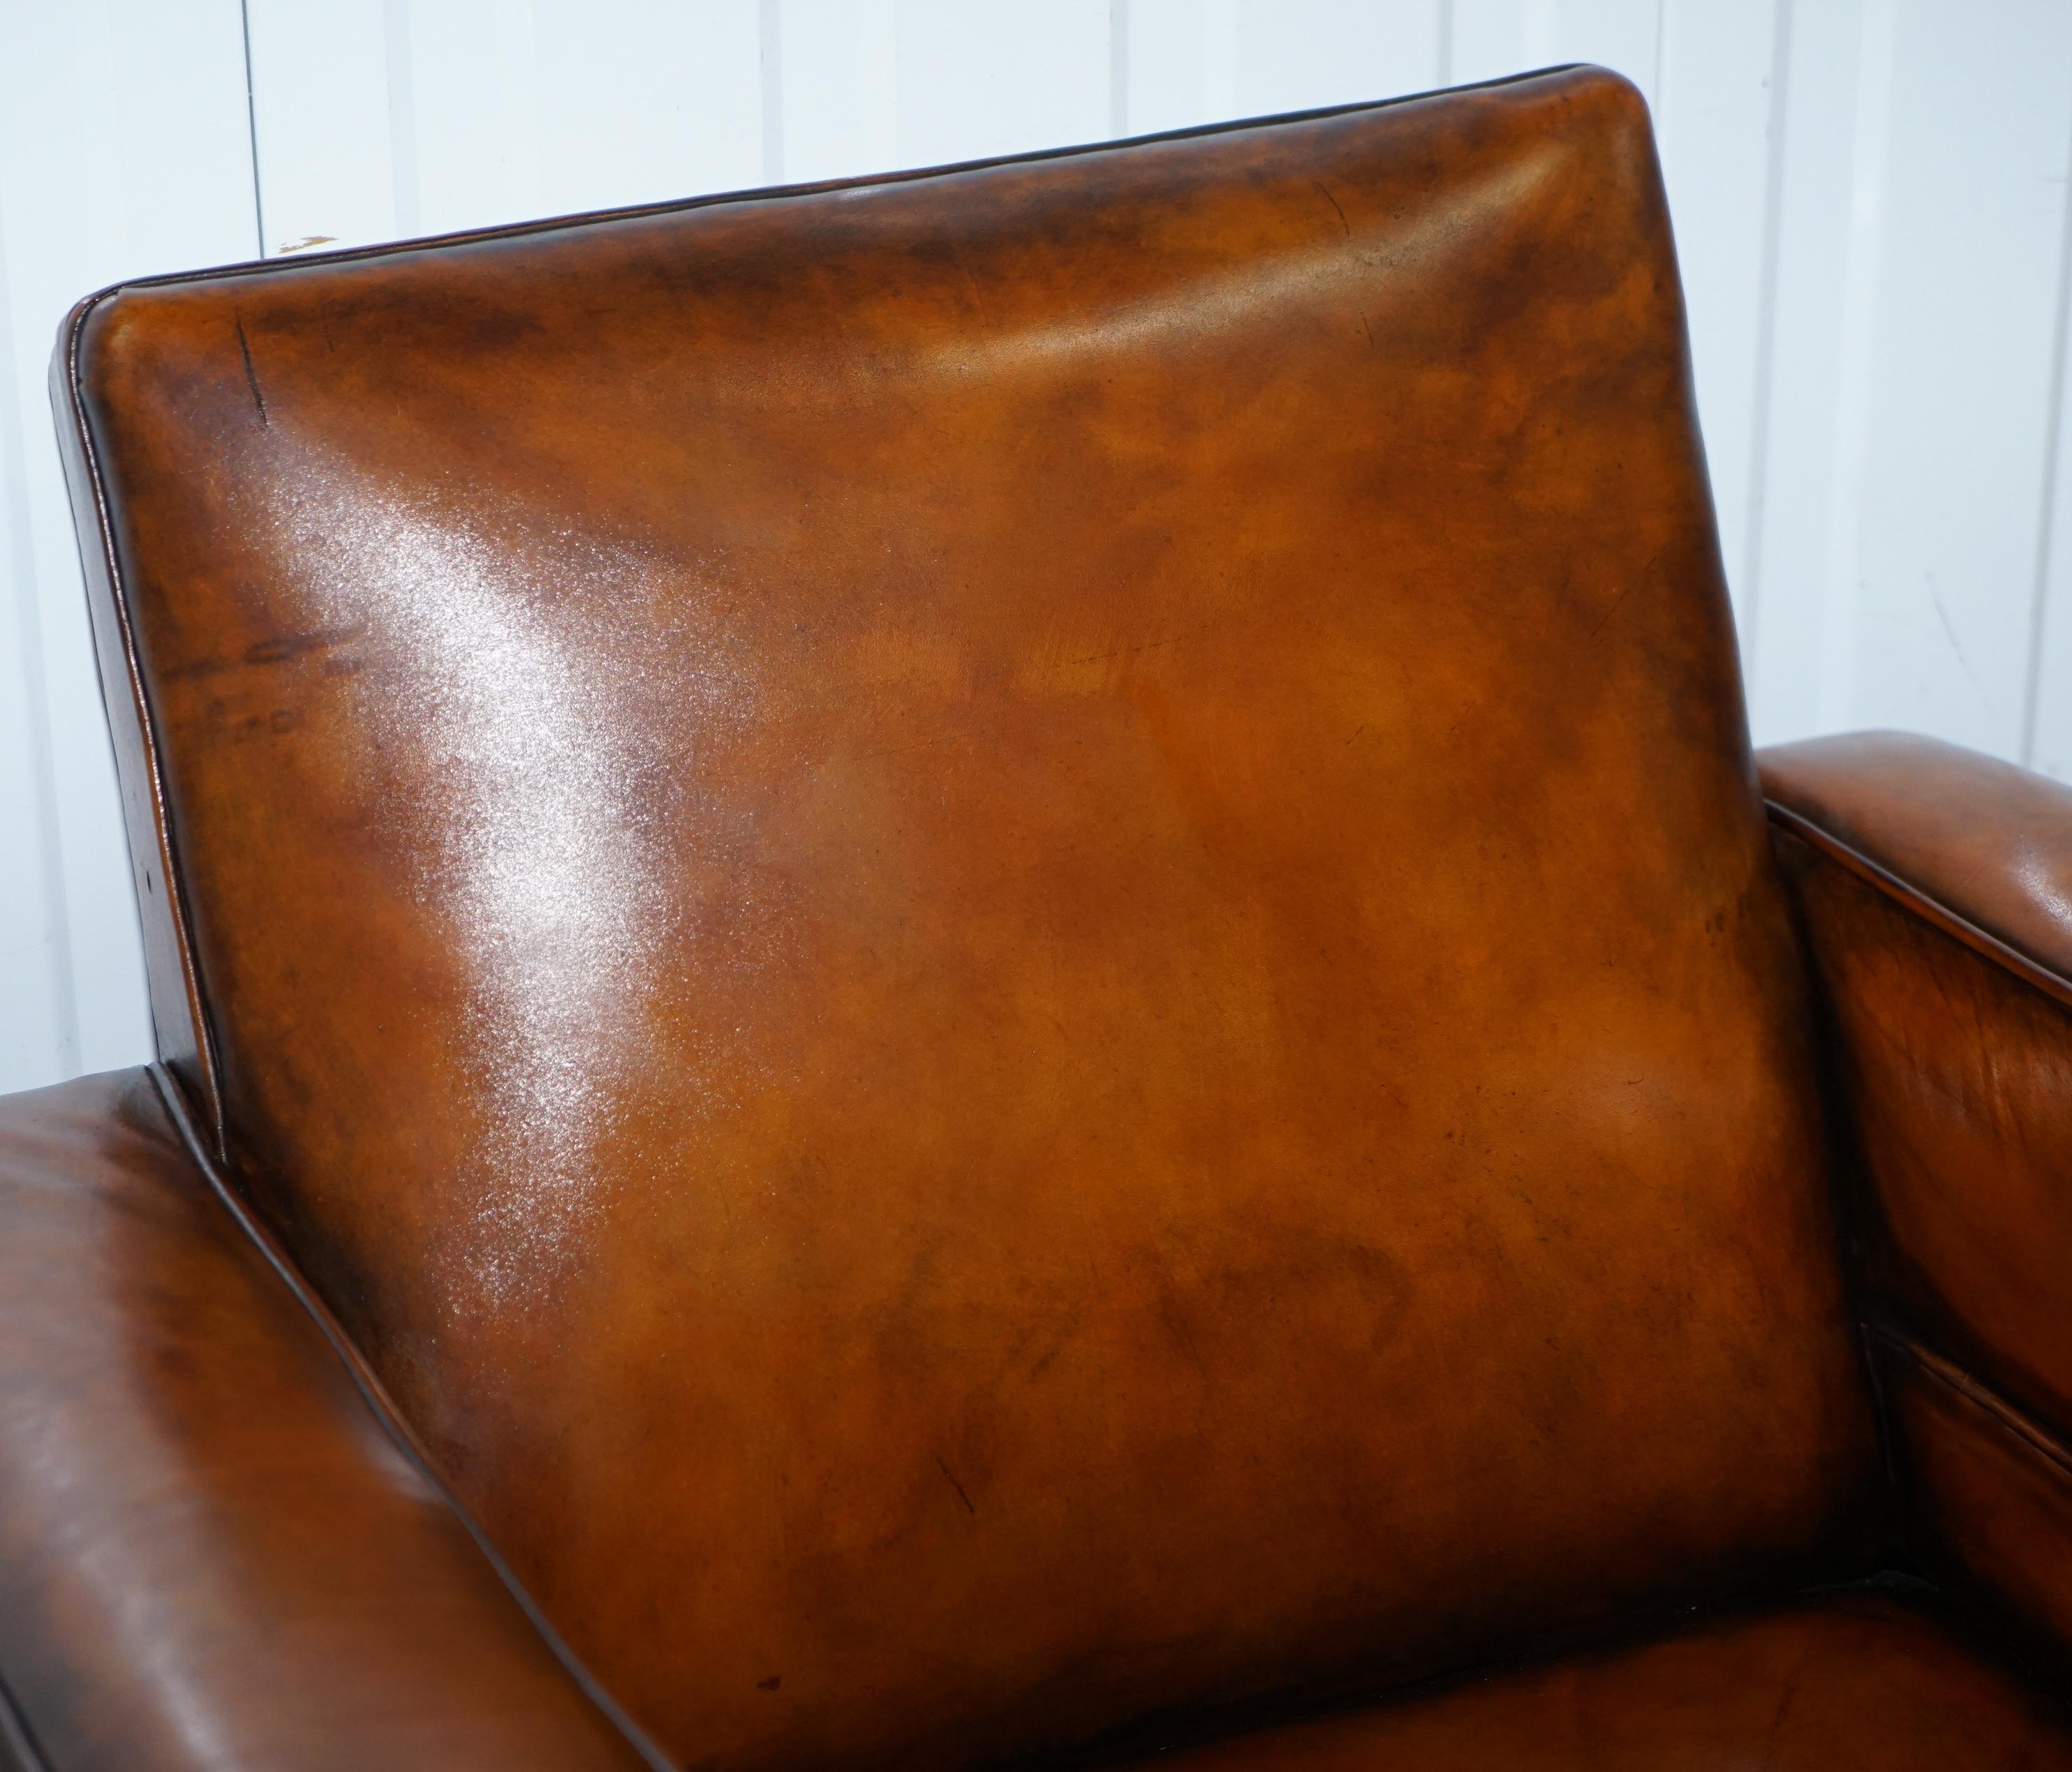 Pair of Victorian Brown Leather Club Armchairs 17th Century Cherub Putti Angels (Handgeschnitzt)